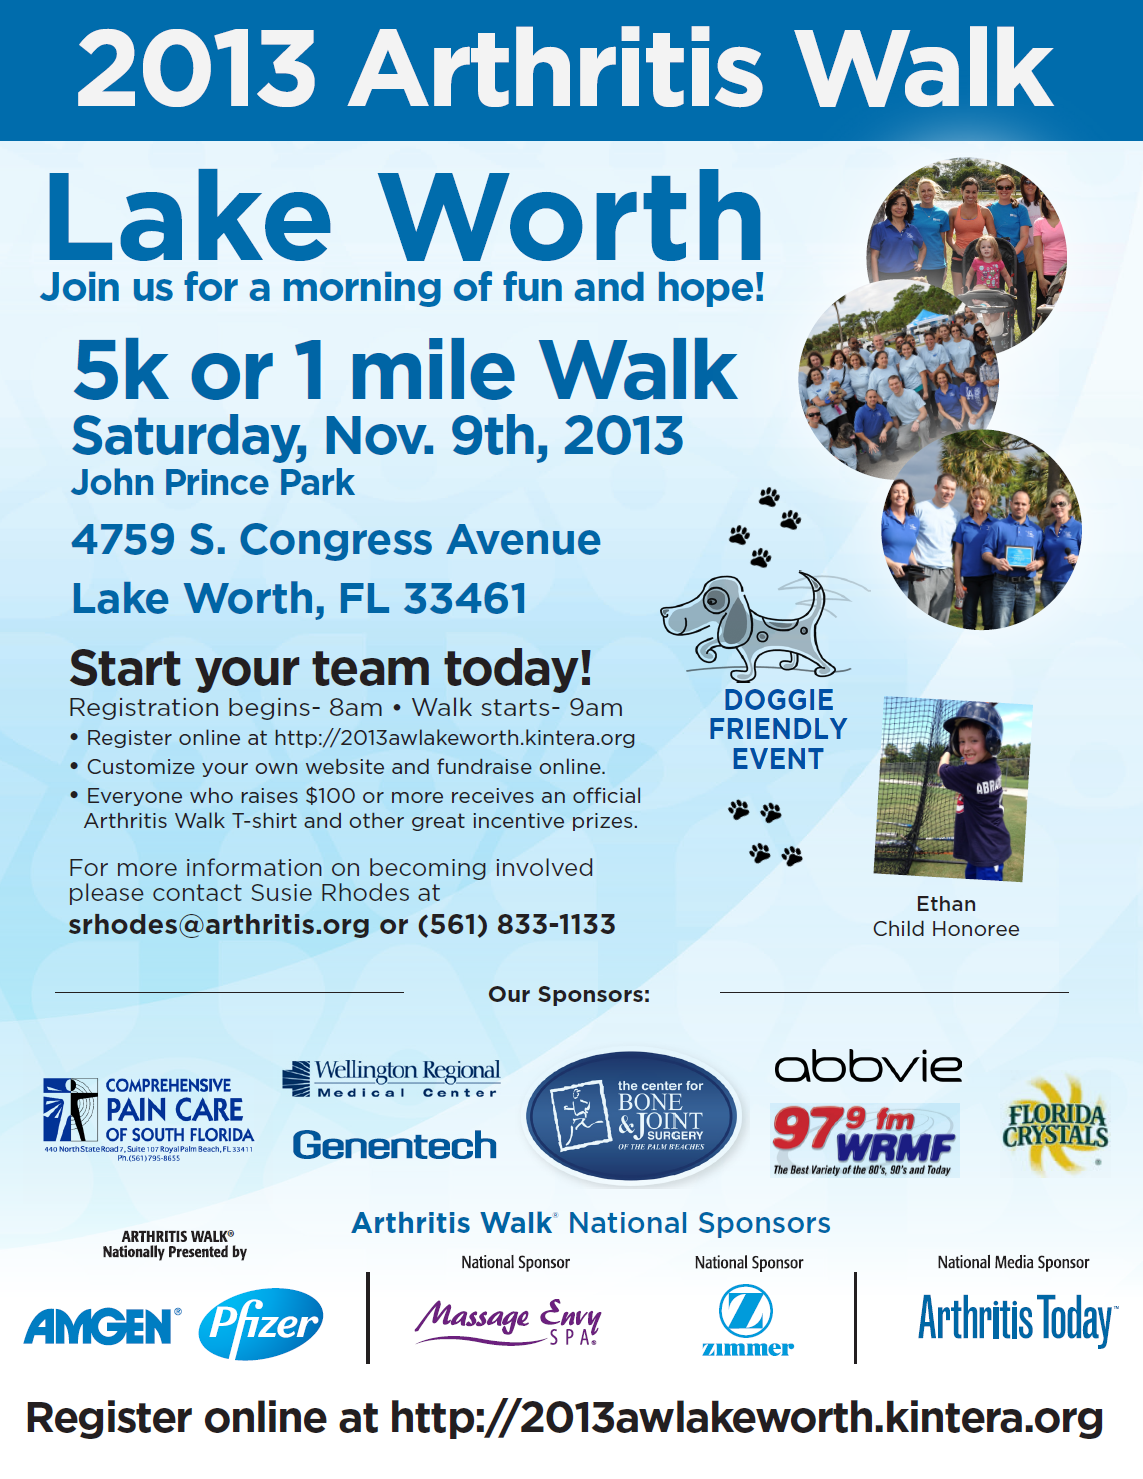 September, 2013 – 2013 Arthritis Walk – Lake Worth – November 9